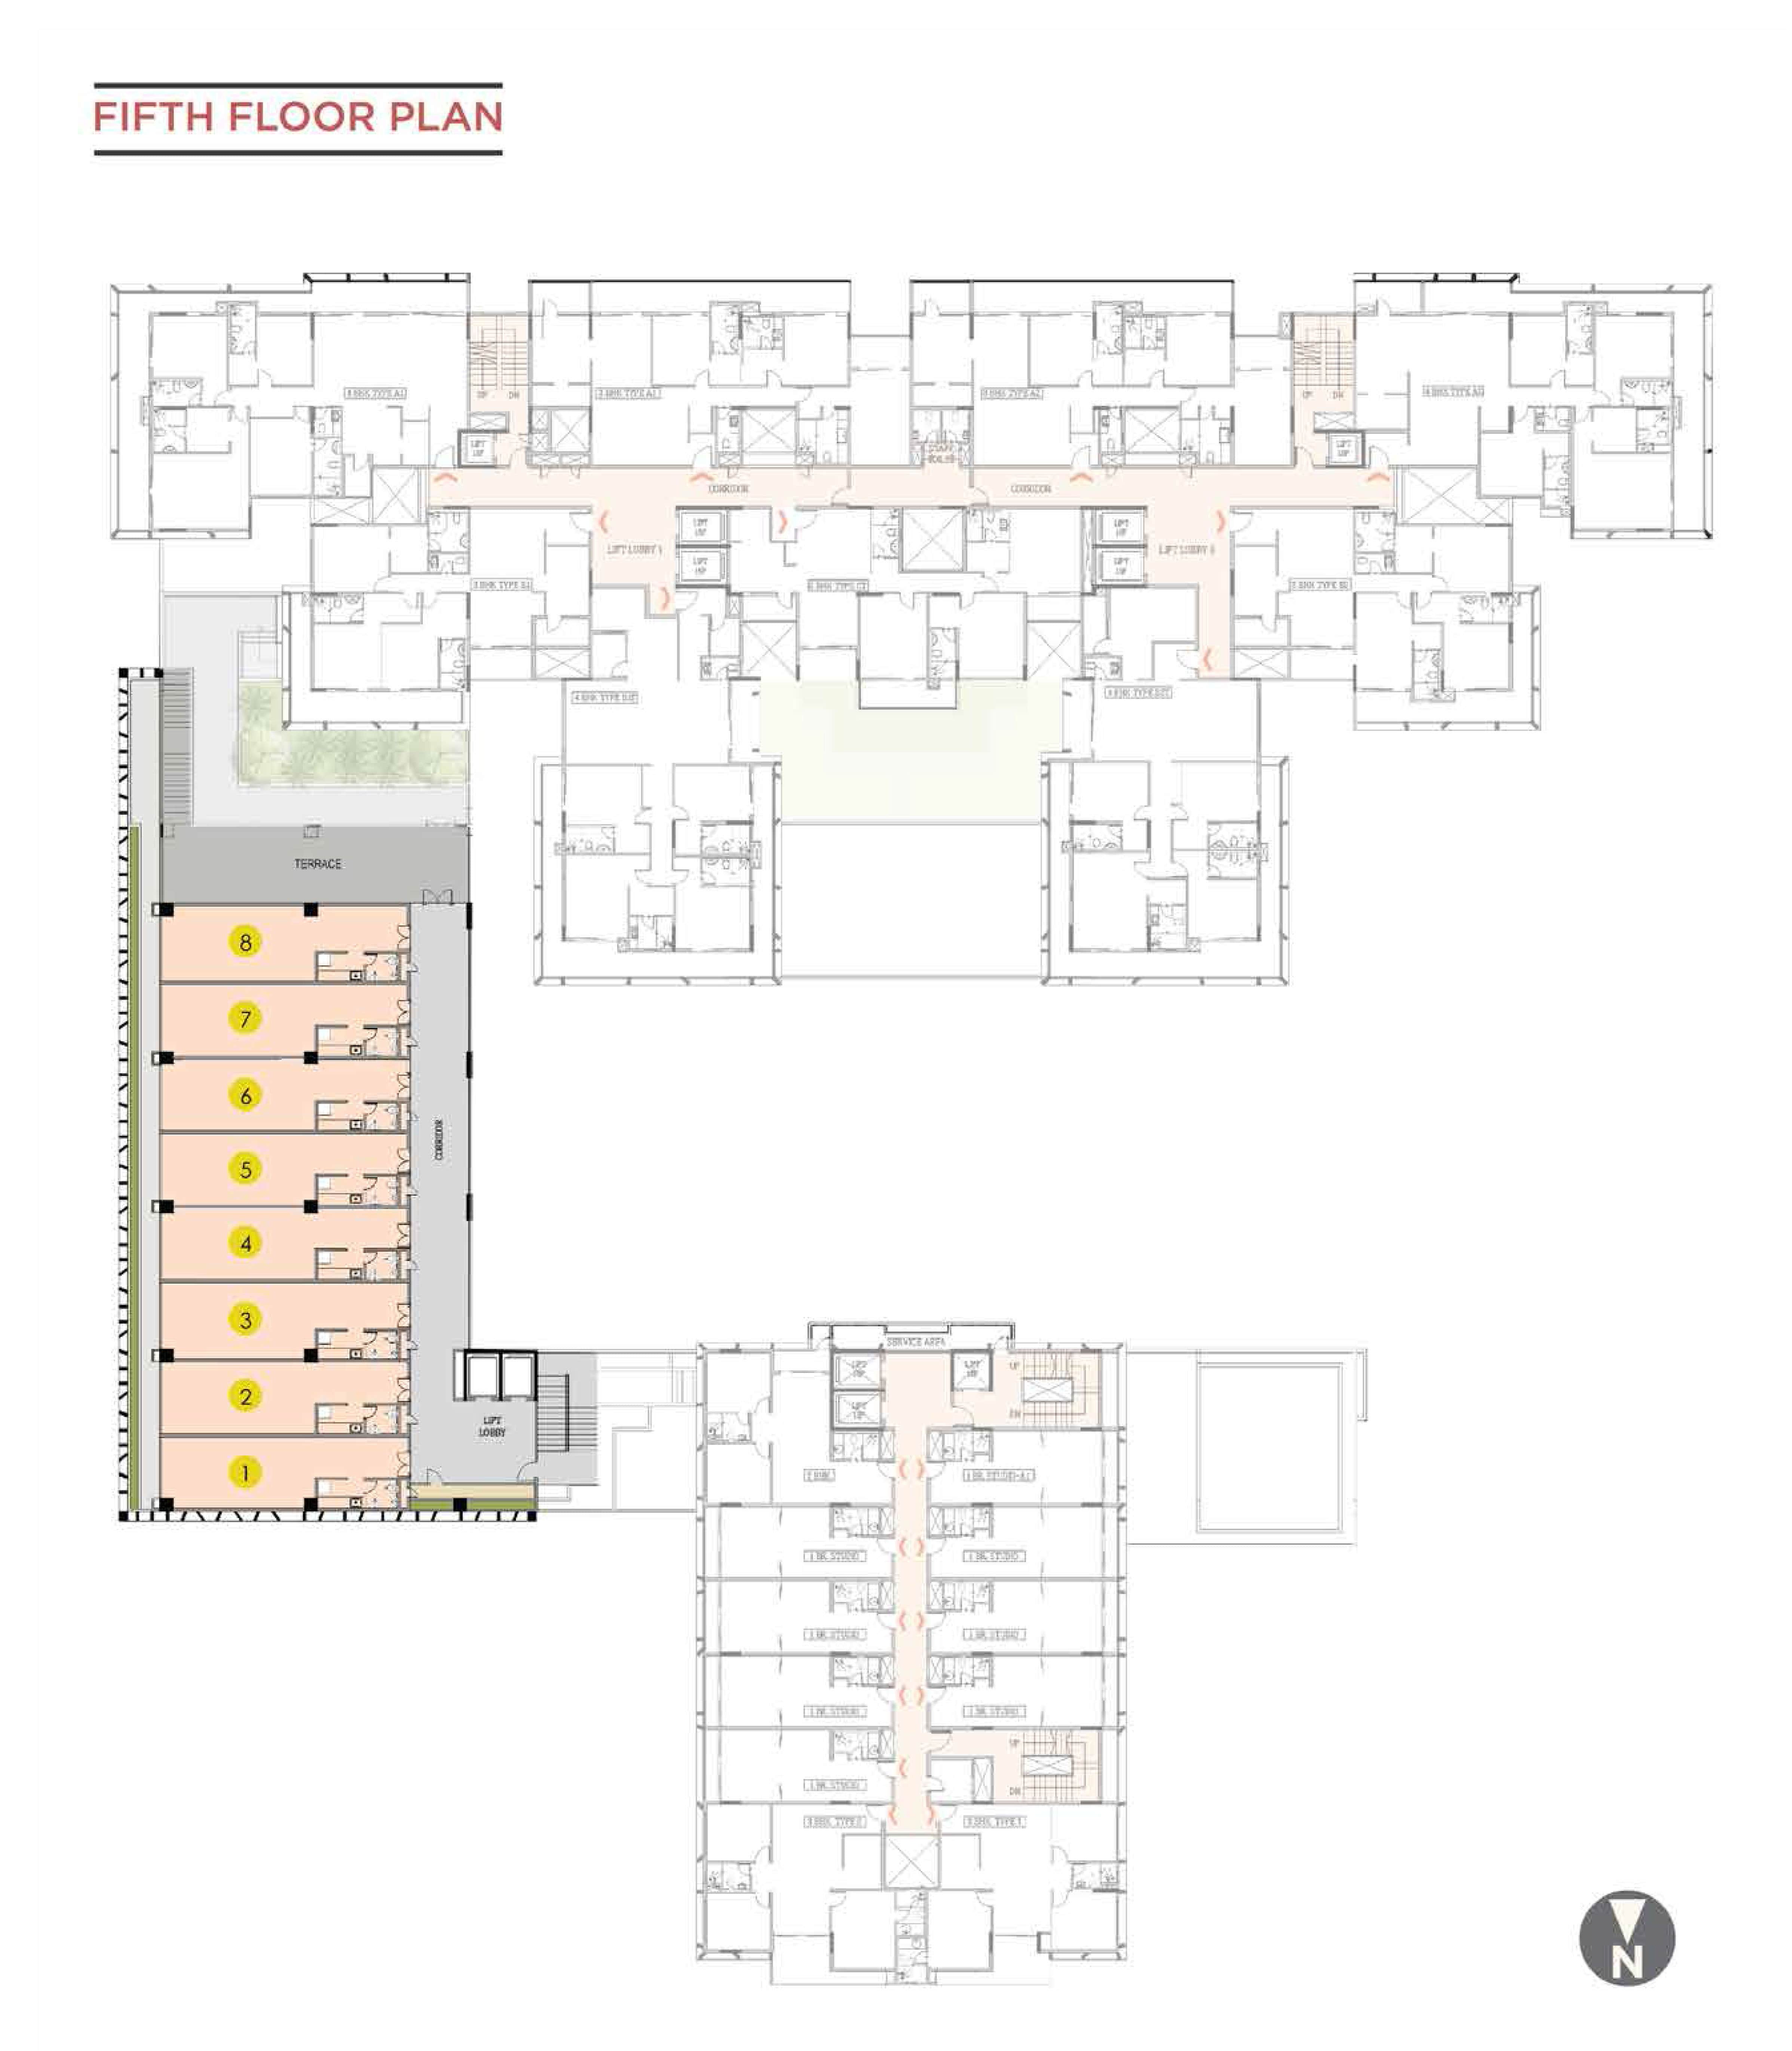 Commercial Block- Fifth Floor Plan